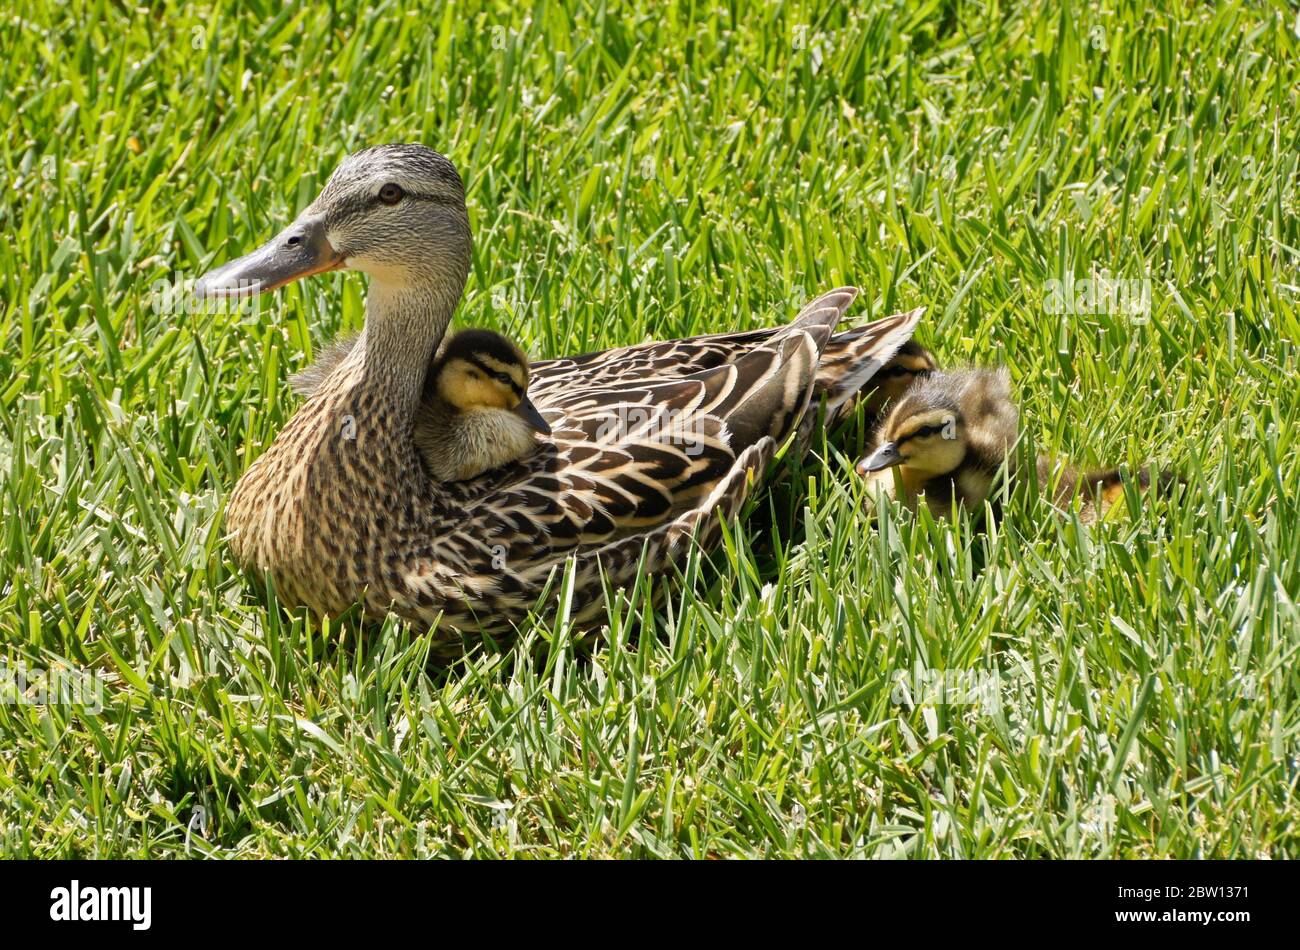 Hembra (gallina) pato de pato y patos descansando en hierba con un pato sentado en su espalda, el sur de California Foto de stock